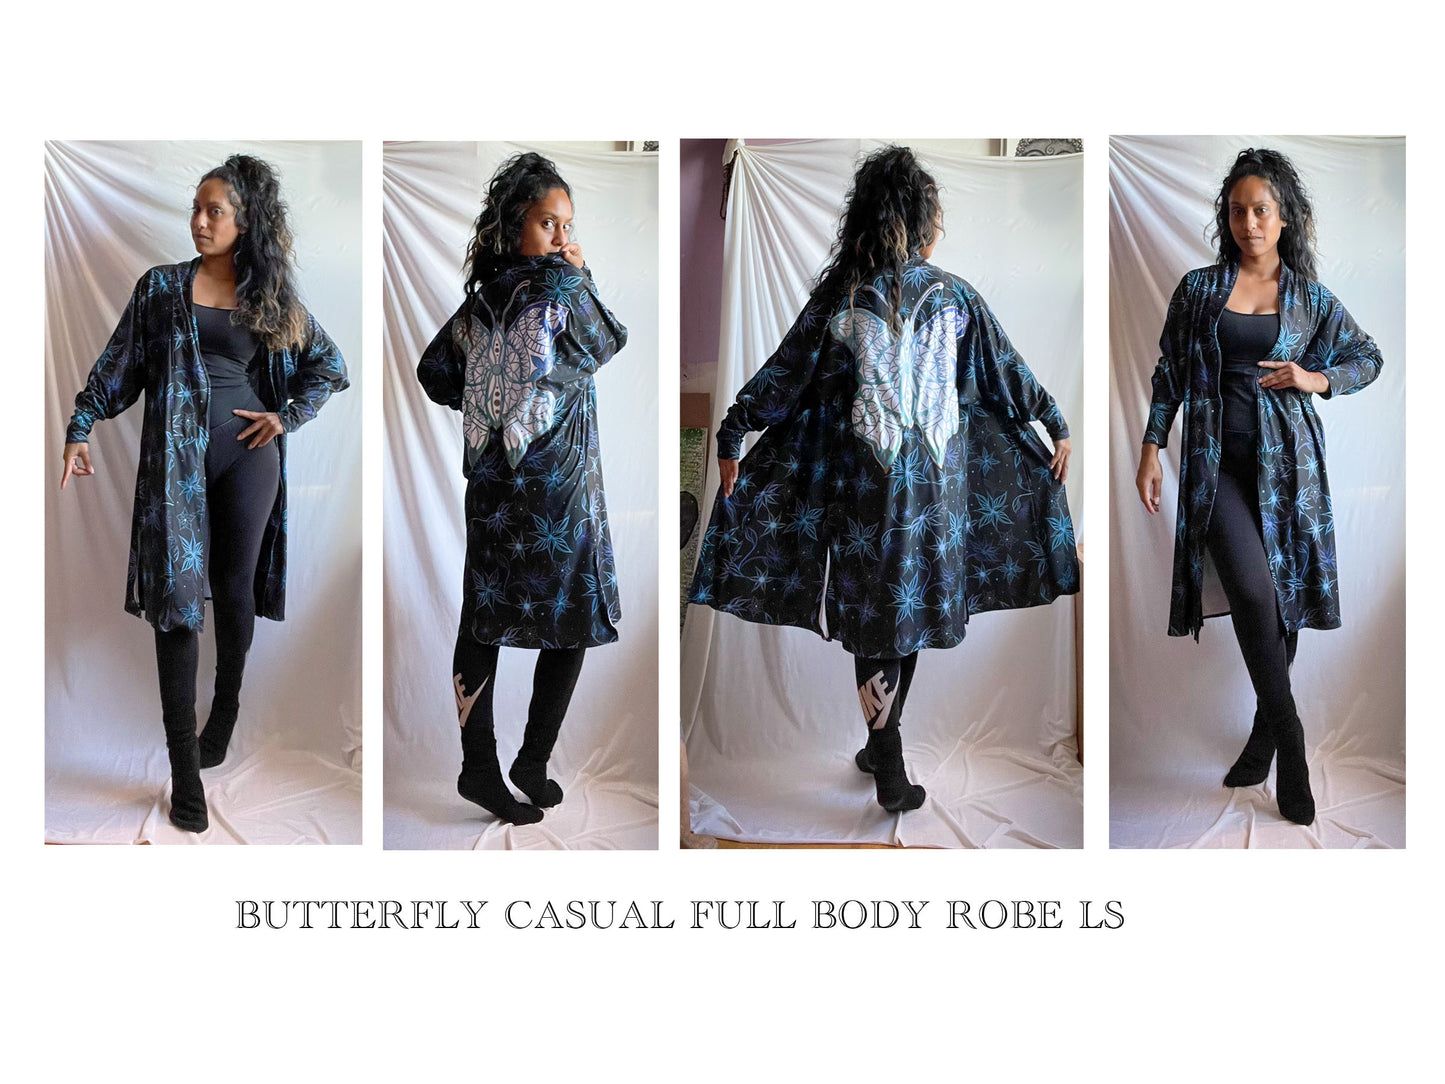 Butterfly, bespoke, sweater, fleece, casual, cotton, comfy, fashion art, fashion, winter wear, winter looks, blue